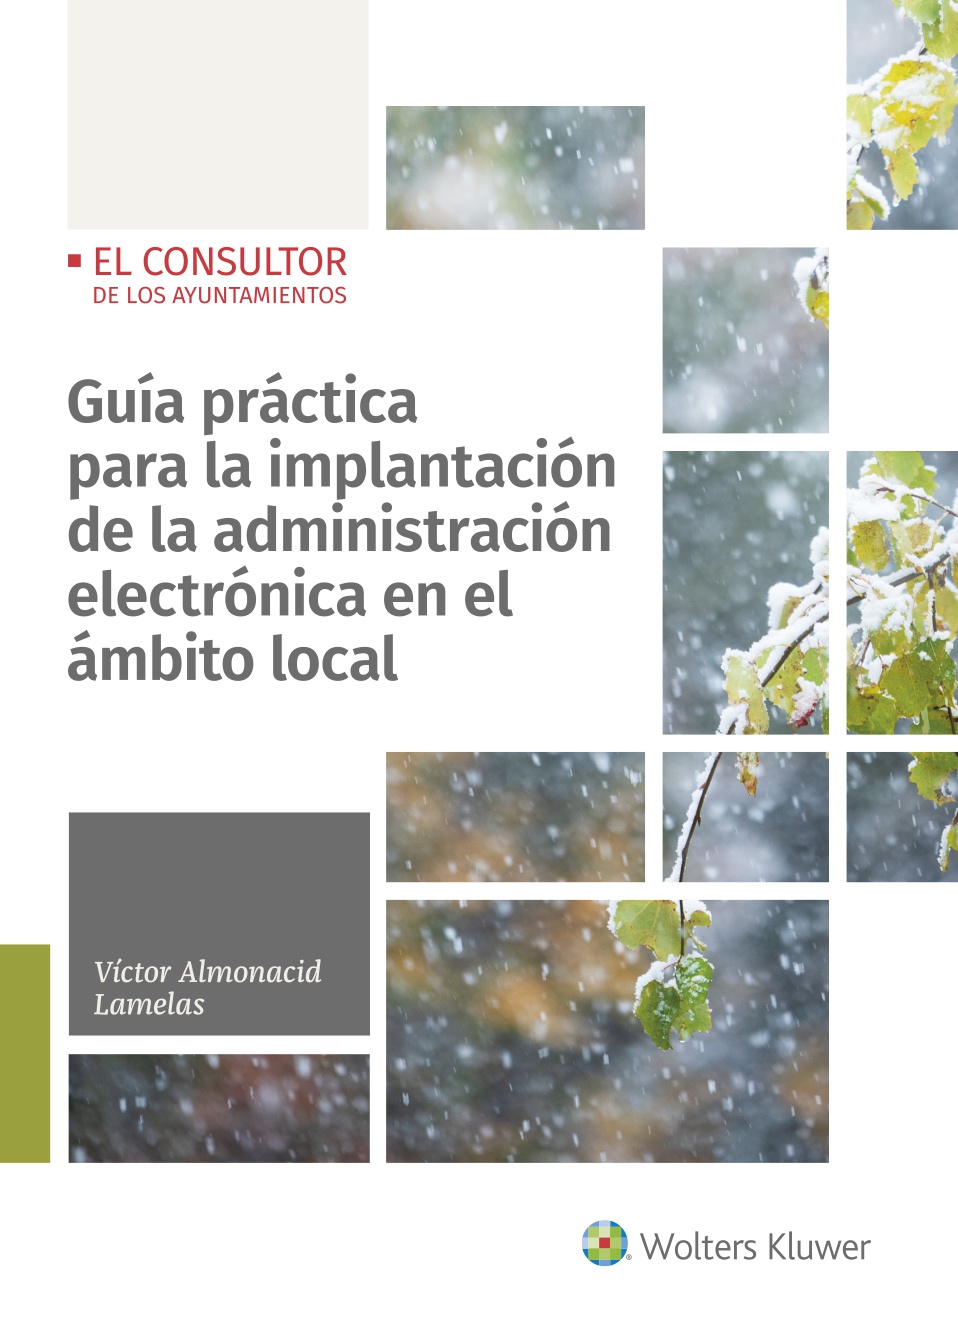 Guía práctica para la implantación de la administración electrónica en el ámbito local